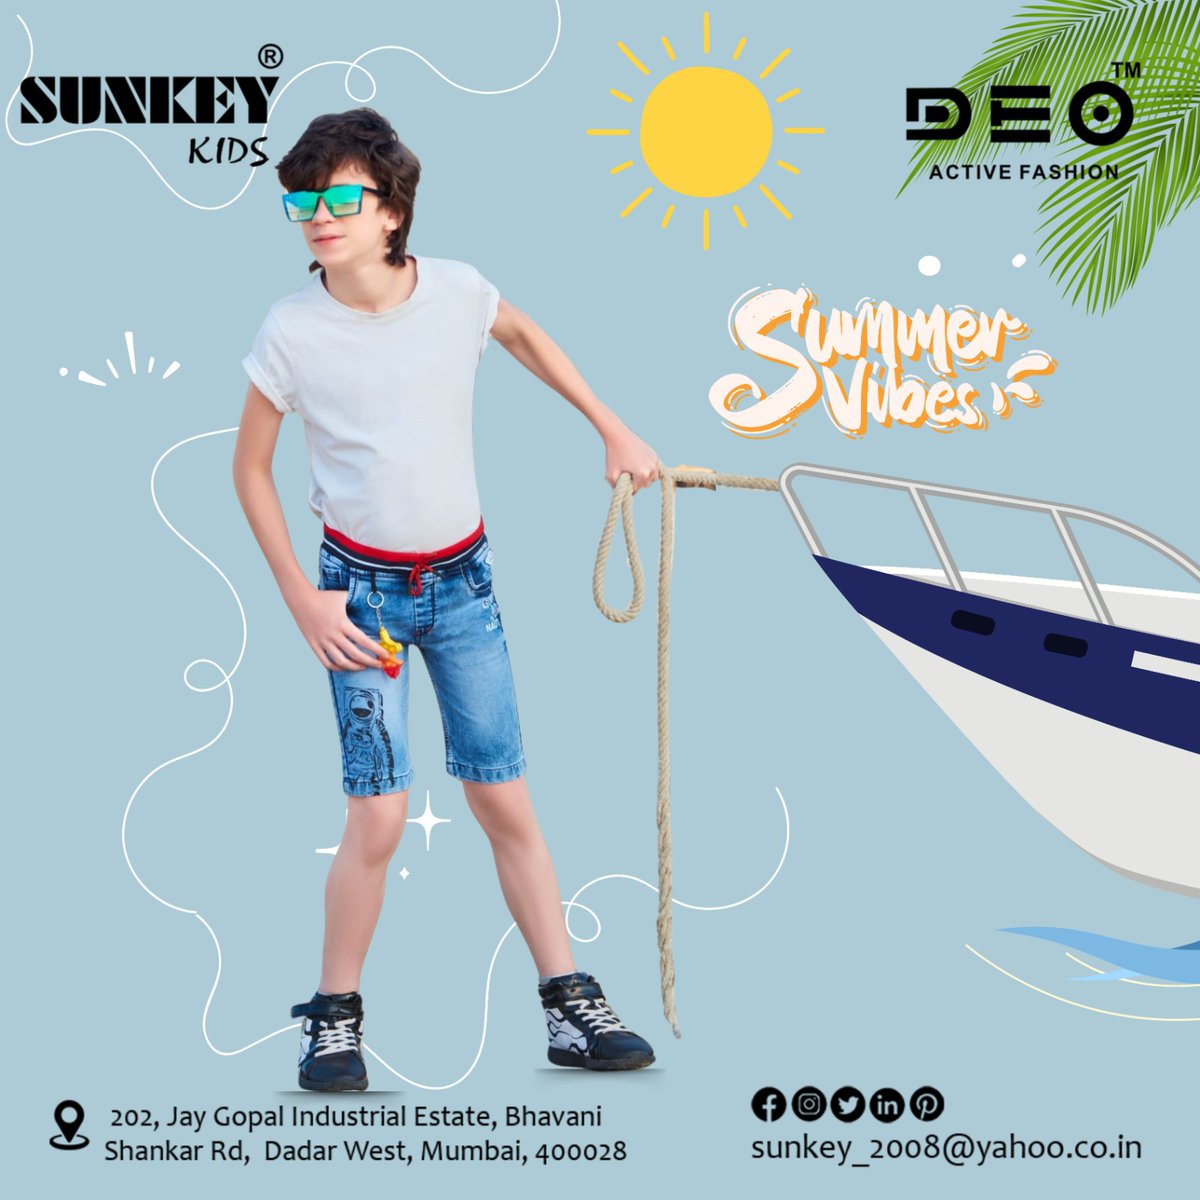 Summer beach wear collection 2024 🤩🤩

#DenimStyle #FashionFridays #CasualWear #JeansLife #DenimLove #BoysFashion #DenimOnPoint #RippedJeans #StyleGoals #OOTD #WardrobeEssentials #DenimTrend #InstaFashion #BoysCloset #JeansGoals #sunkeykids